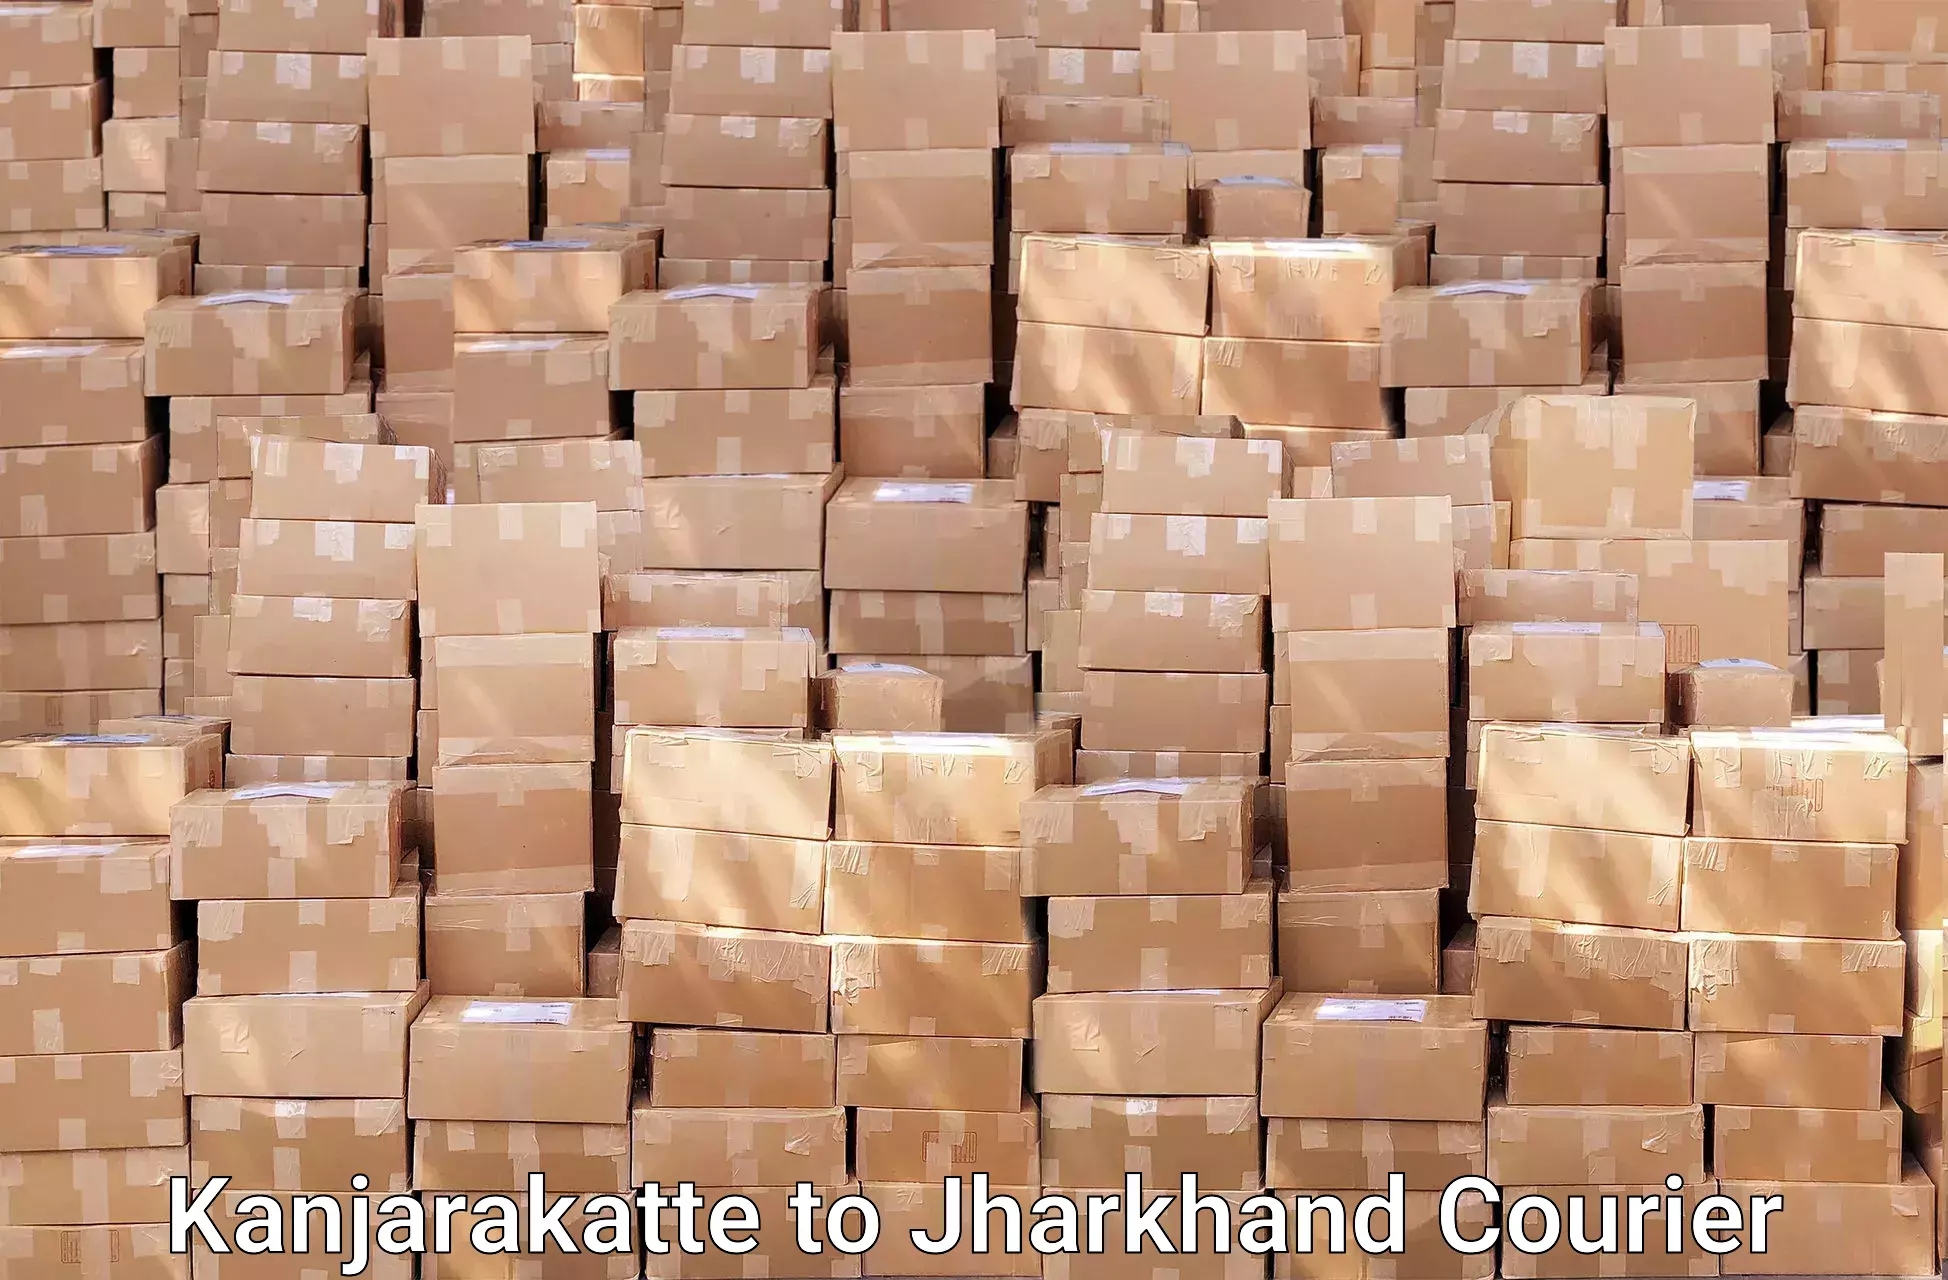 Professional packing services in Kanjarakatte to Bokaro Steel City